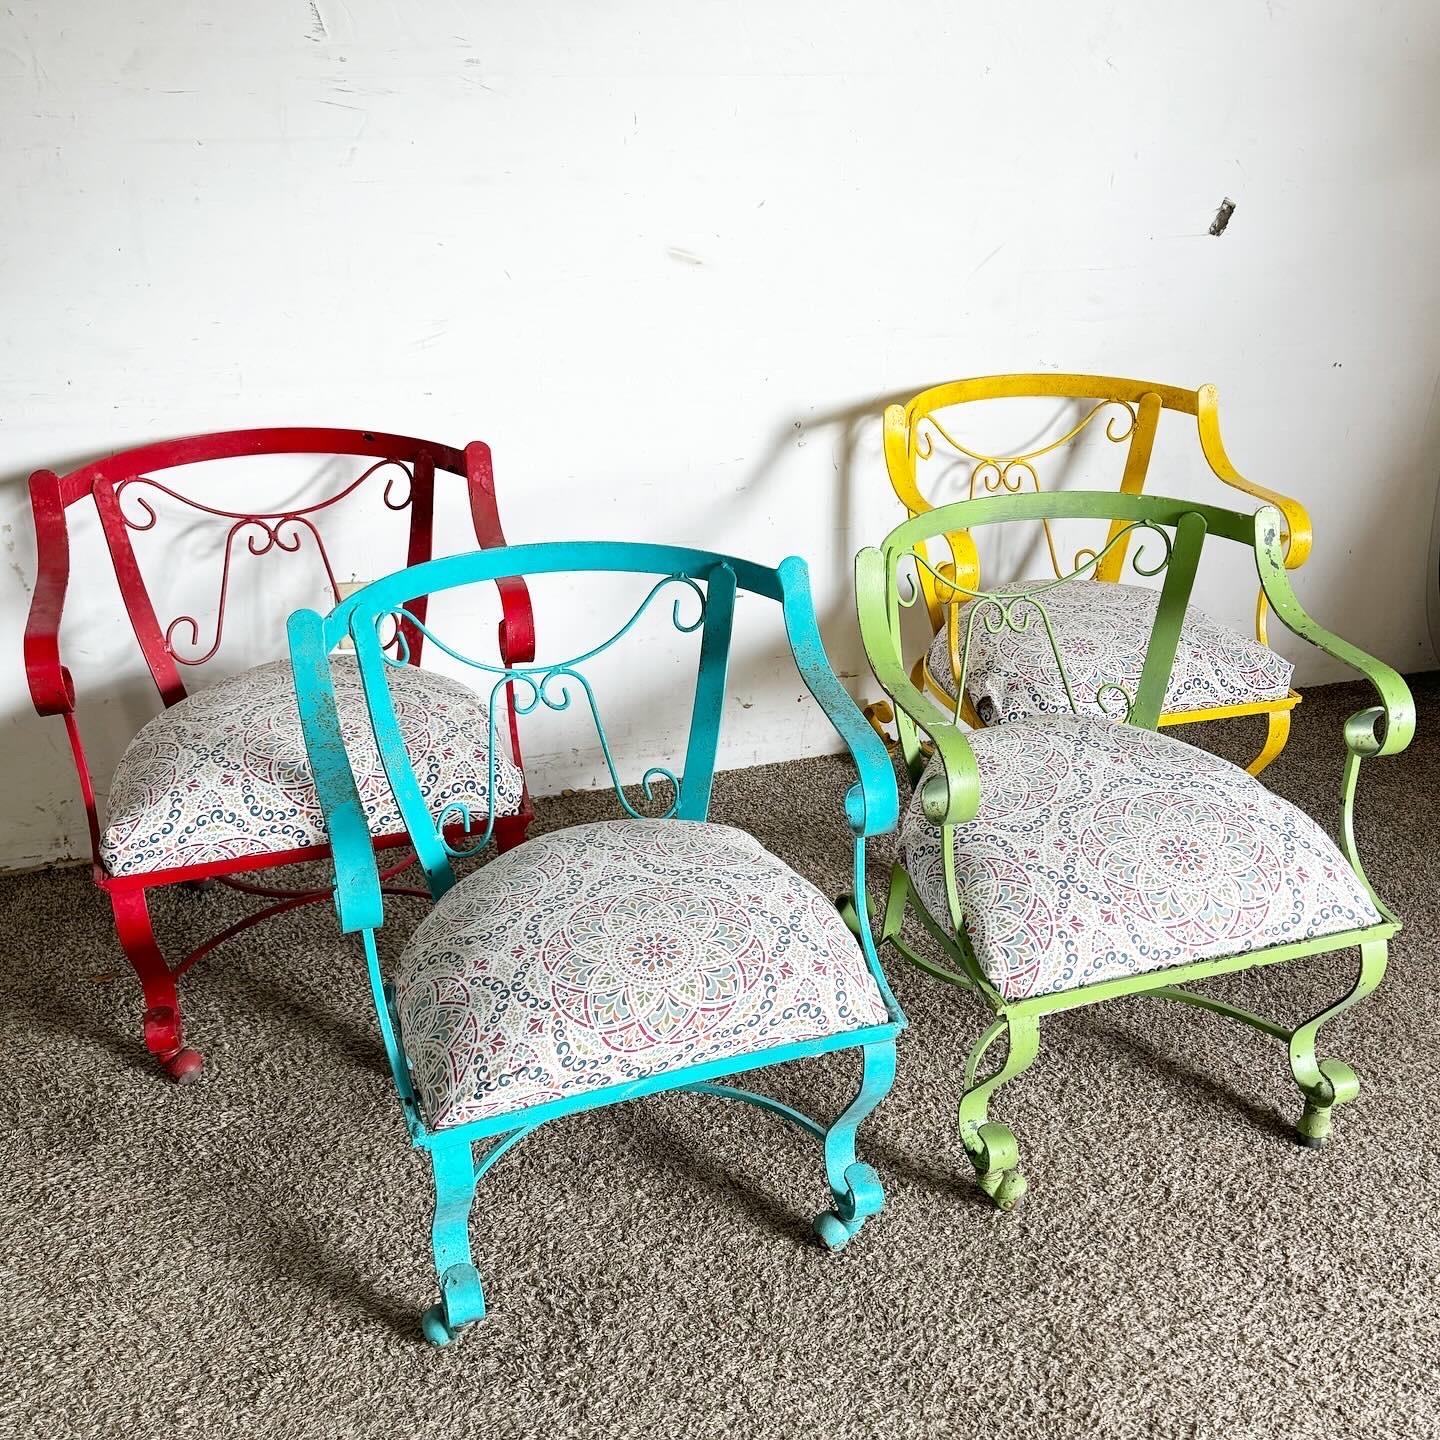 Illuminez votre espace avec cet ensemble vibrant de quatre chaises à bras en fer forgé multicolore sur roulettes. Chaque chaise brille dans une teinte différente - rouge, bleu, vert et jaune - apportant une atmosphère vivante et ludique à n'importe